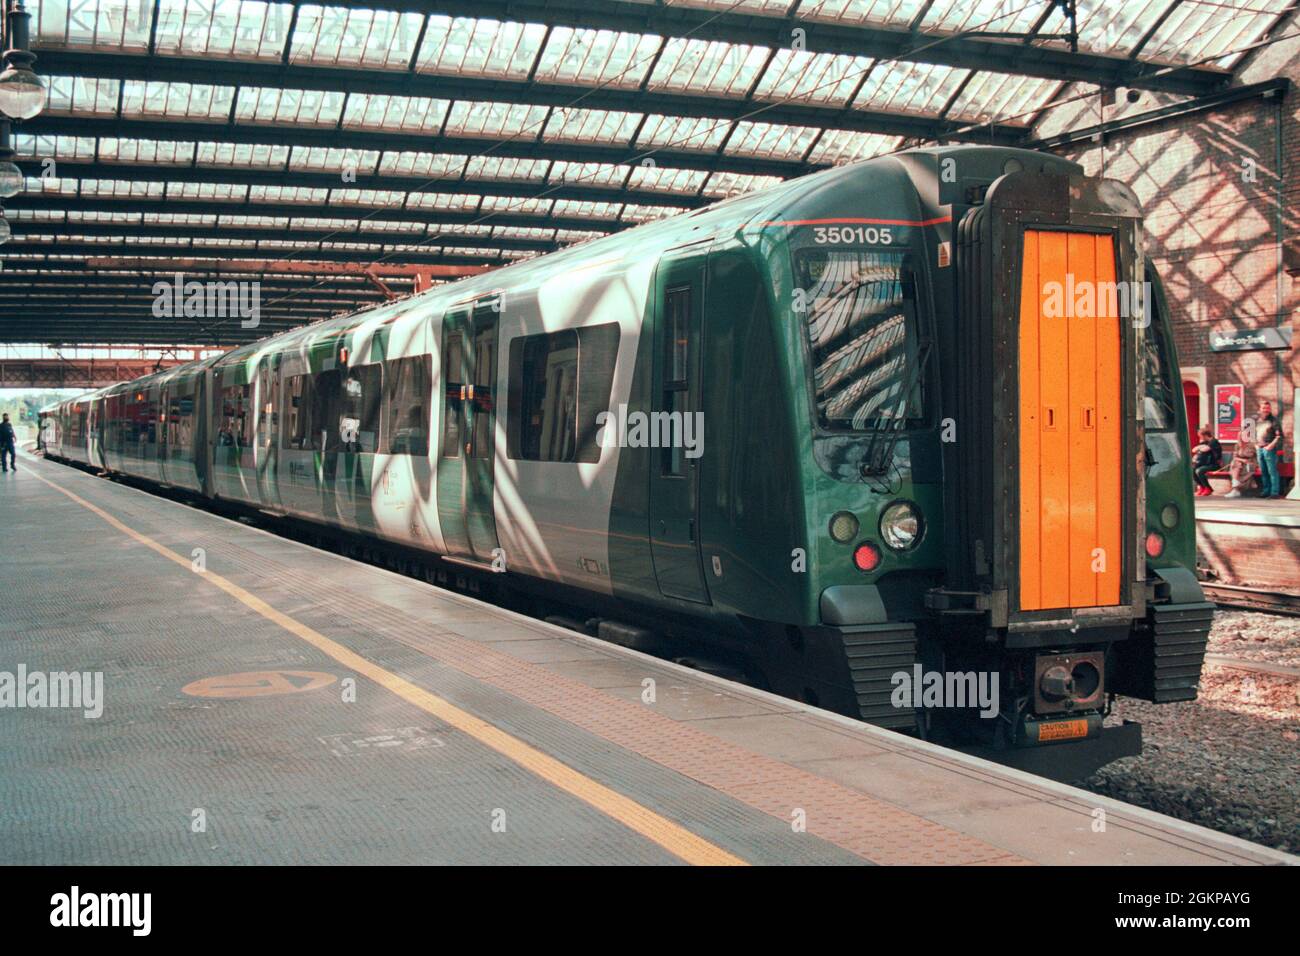 Stoke-on-Trent, Reino Unido - 10 de julio de 2021: Un tren eléctrico (Clase 350) en la estación de Stoke-on-Trent. Foto de stock